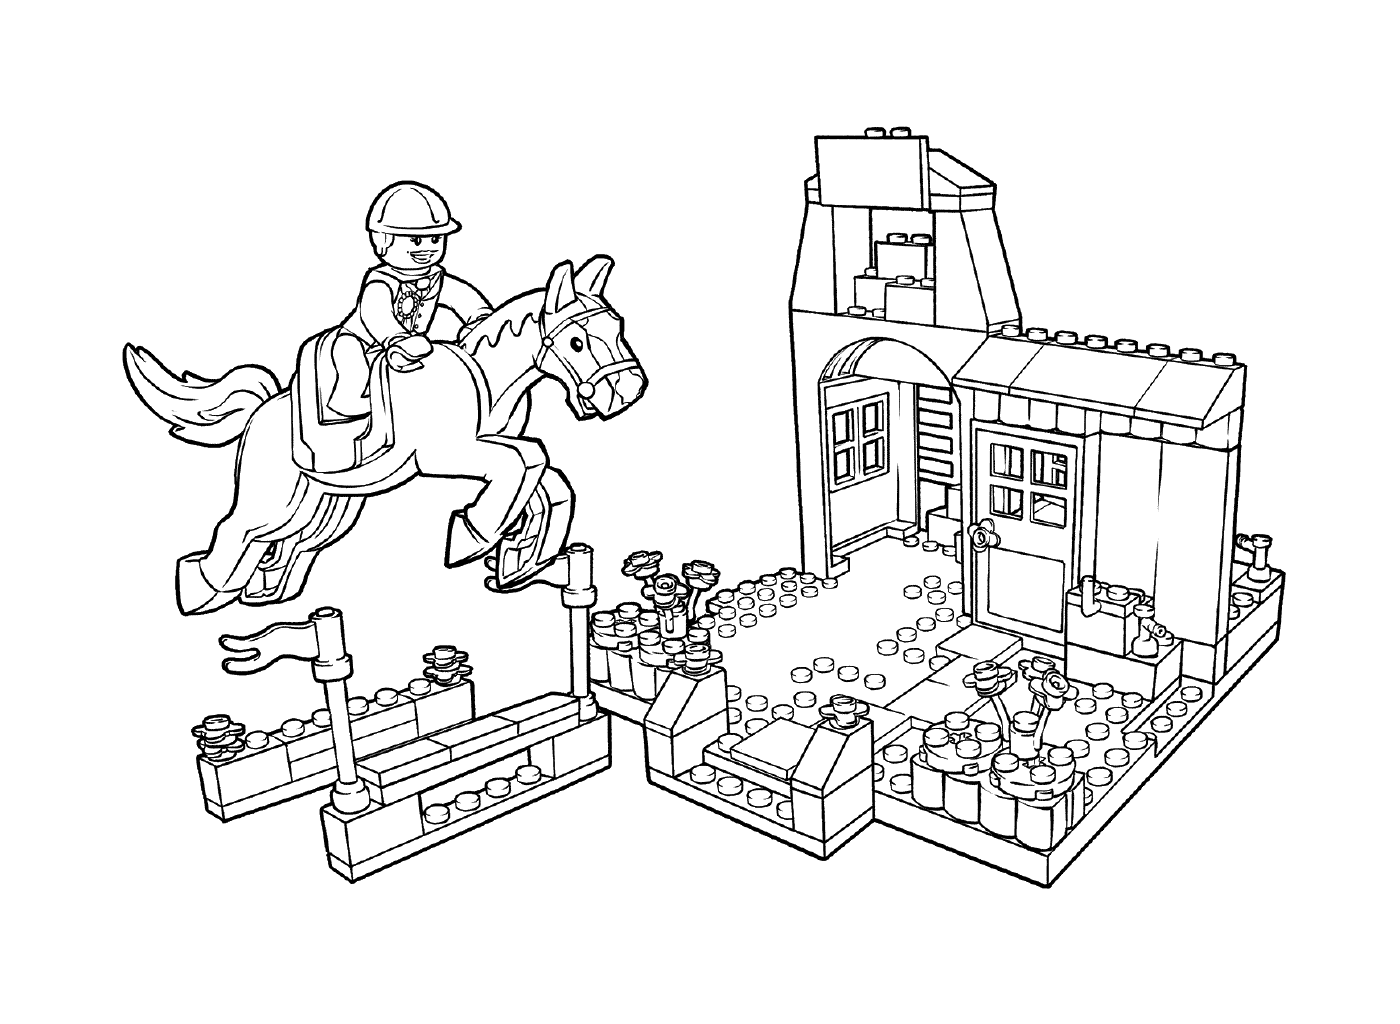  Concurso ecuestre LEGO Pony Farm 